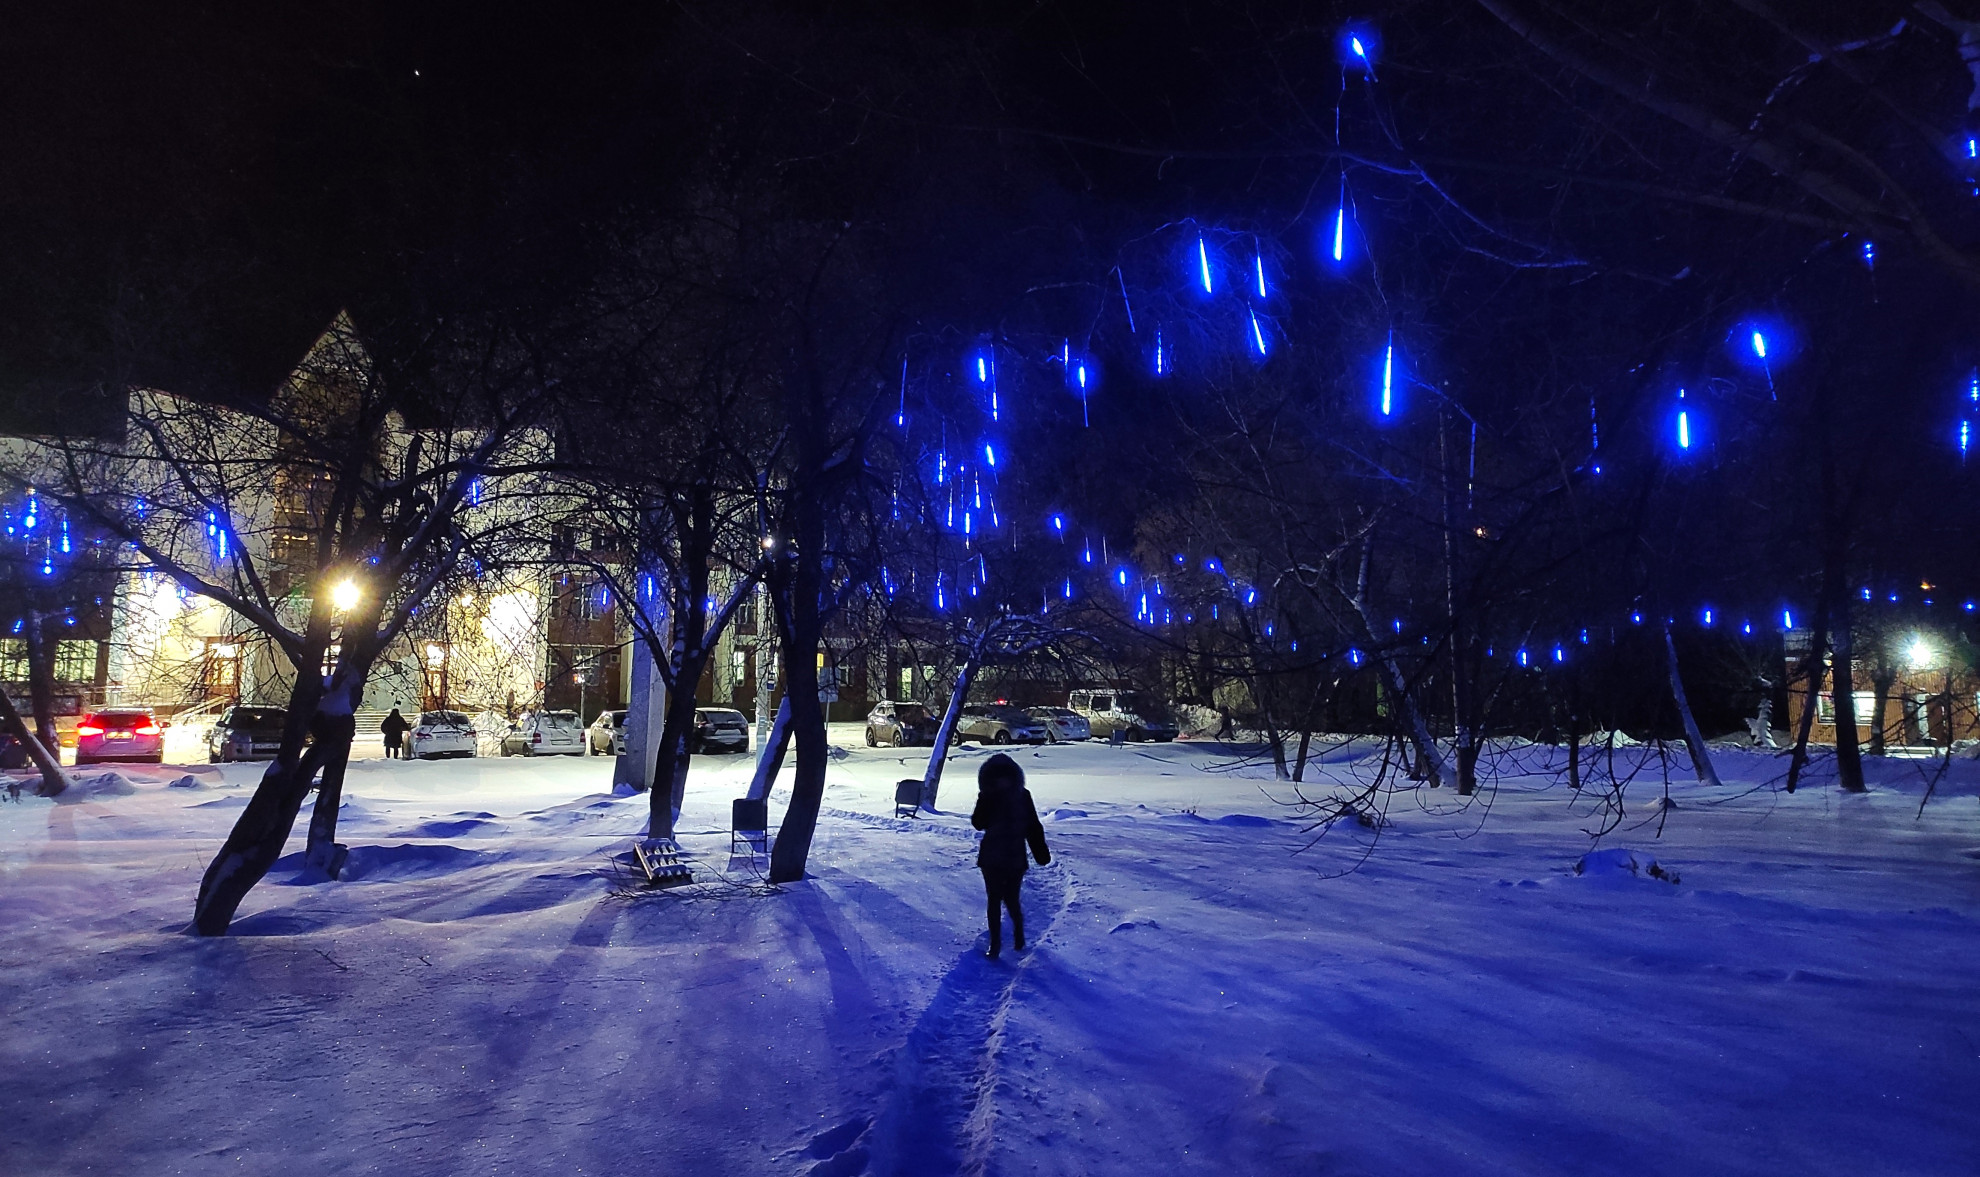 Тающие ярко-синие сосульки стекают по веткам деревьев у сквера Привокзальный. Такие необычные новогодние сосульки не первый год украшают яблоньки у “Вентпрома”, а теперь вот засверкали и у вокзала. И приехавшего в Артемовский гостя будут встречать завораживающая синева деревьев у вокзала, сопровождать звезды по улице Ленина и радовать сияющие шары и гирлянды на площади и у завода “Вентпром”.